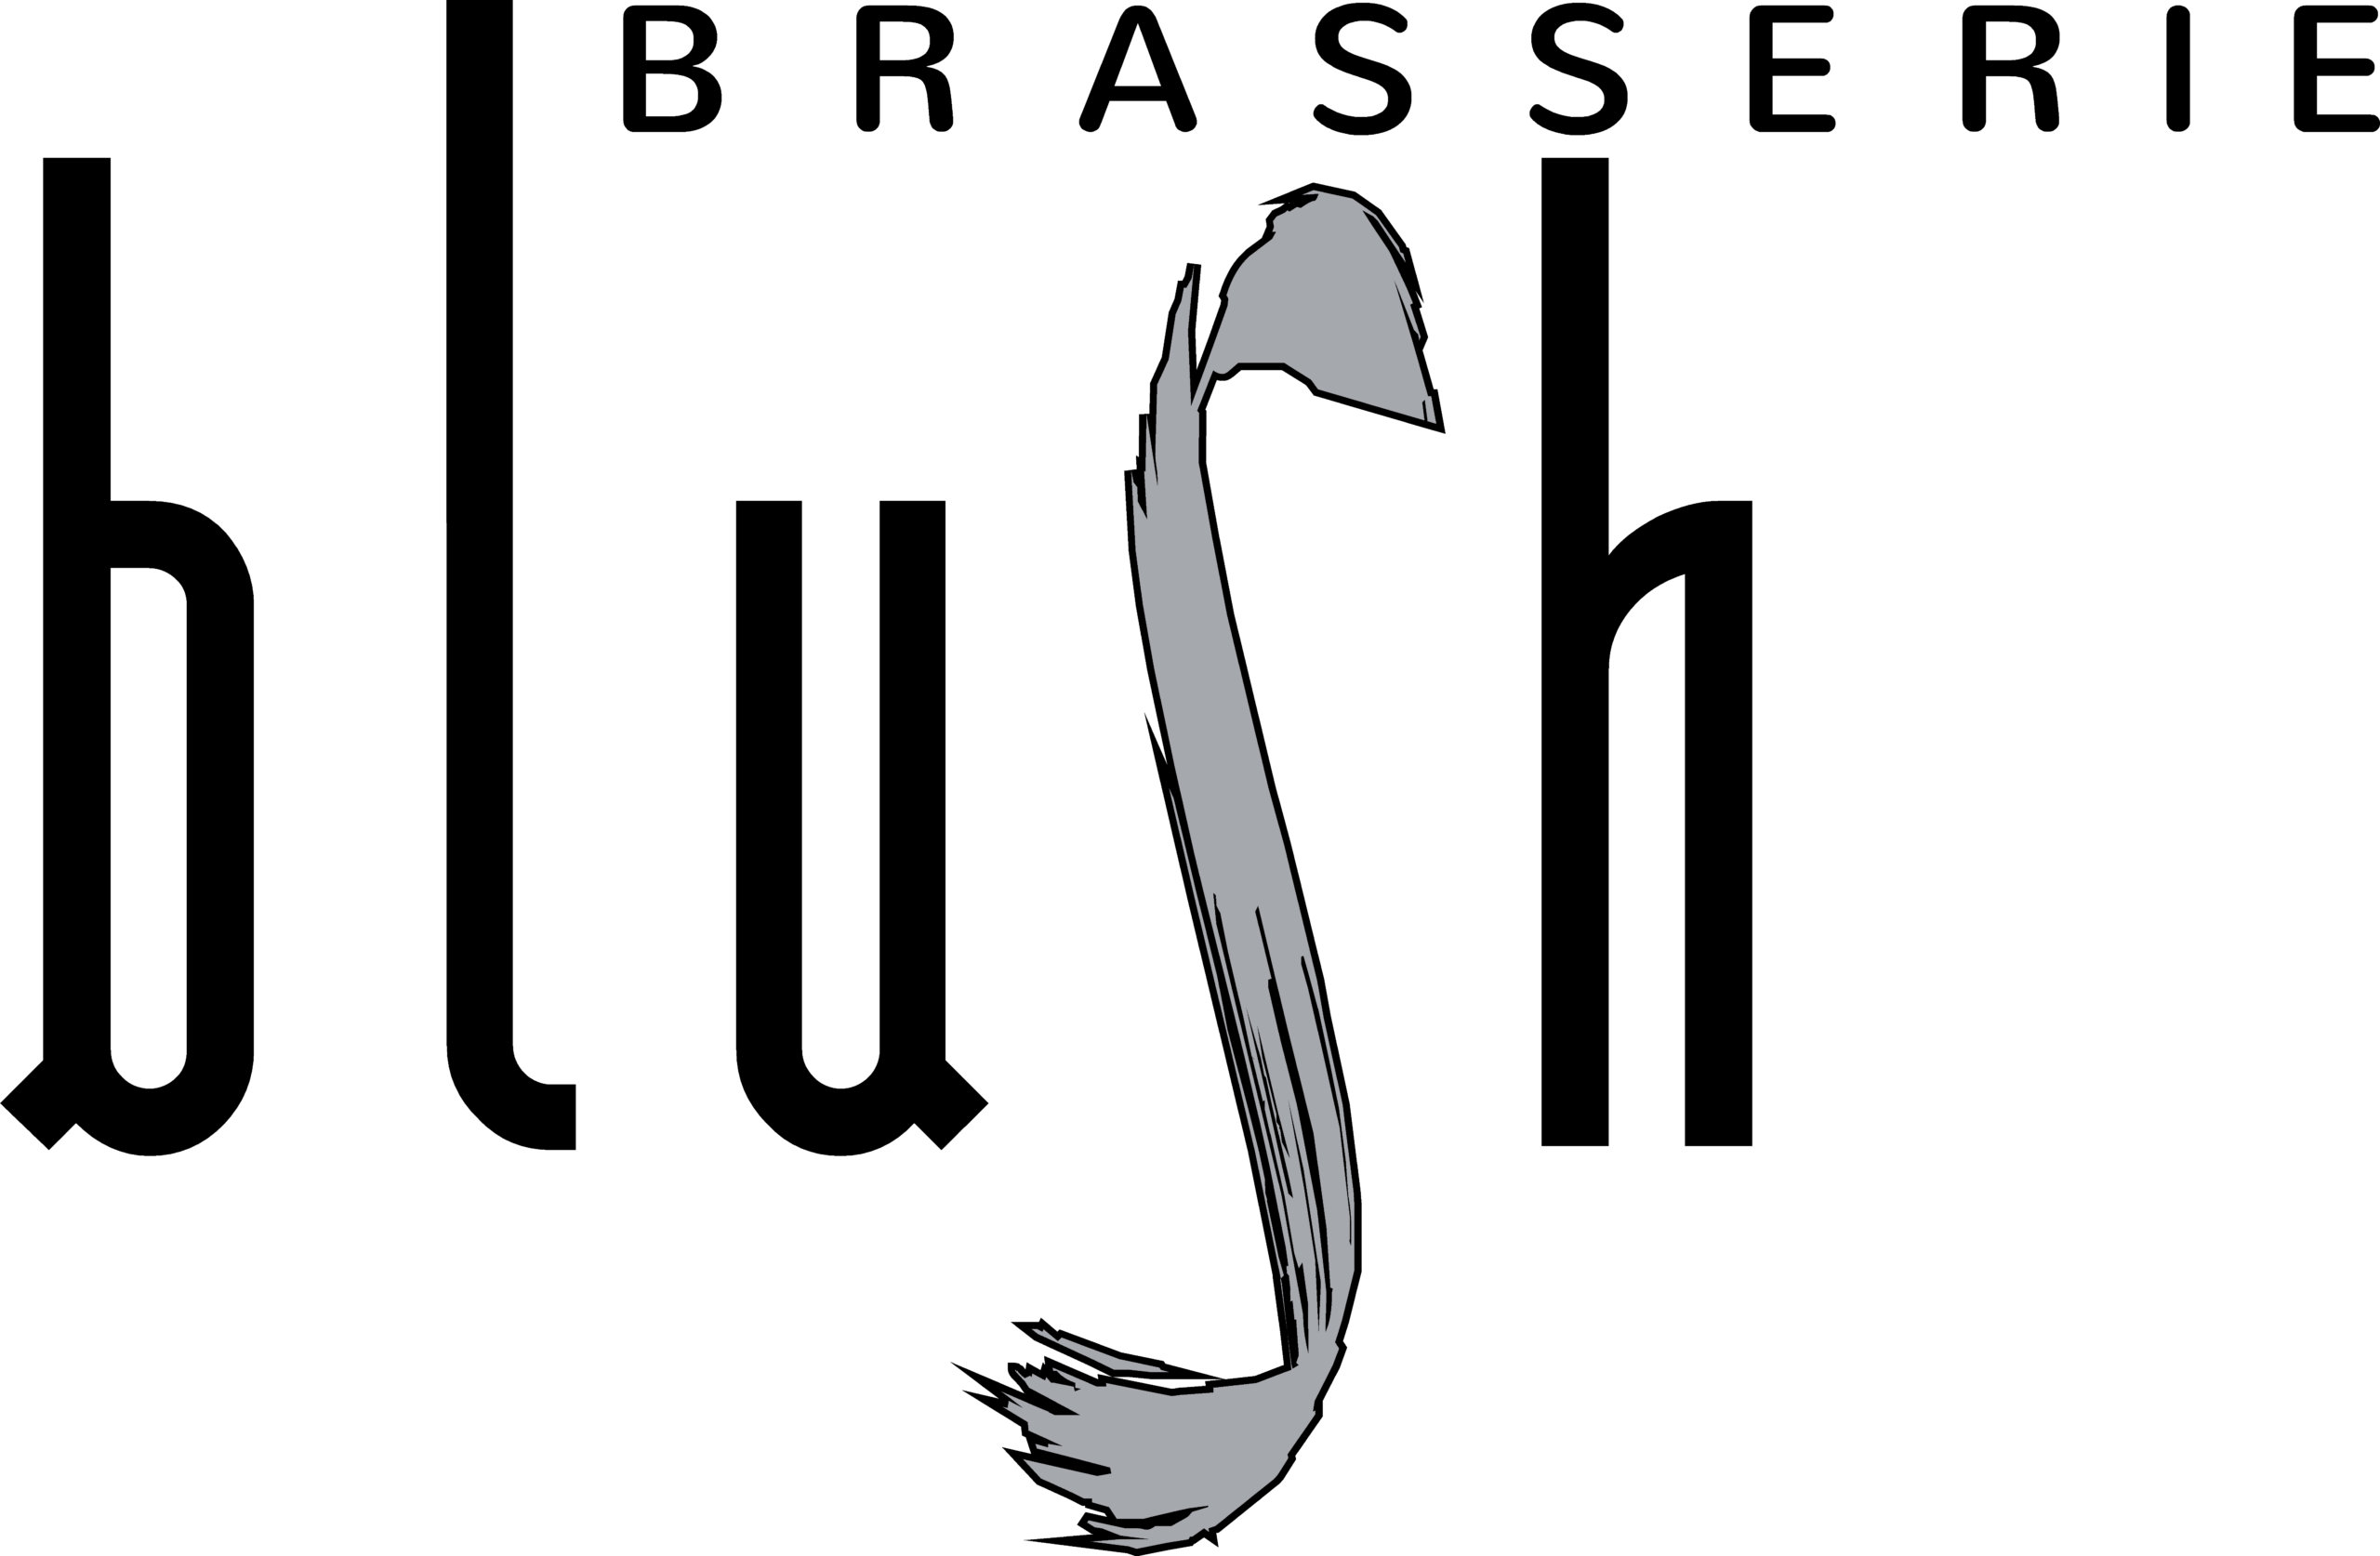 Brasserie Blush